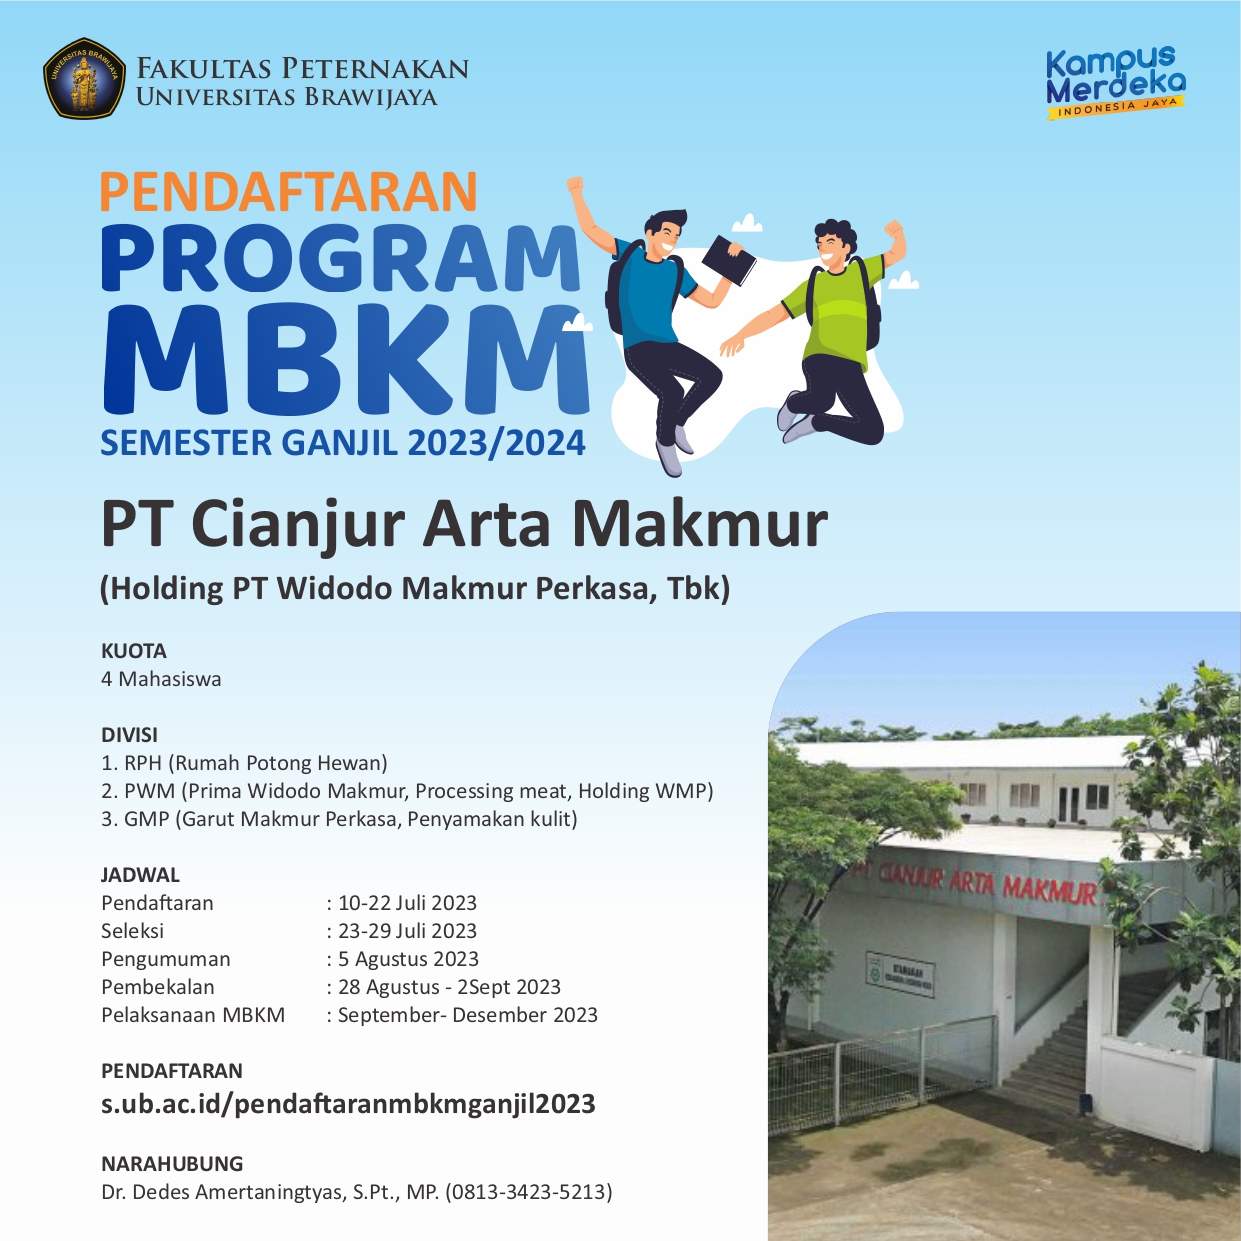 Registration of MBKM PT Cianjur Arta Makmur